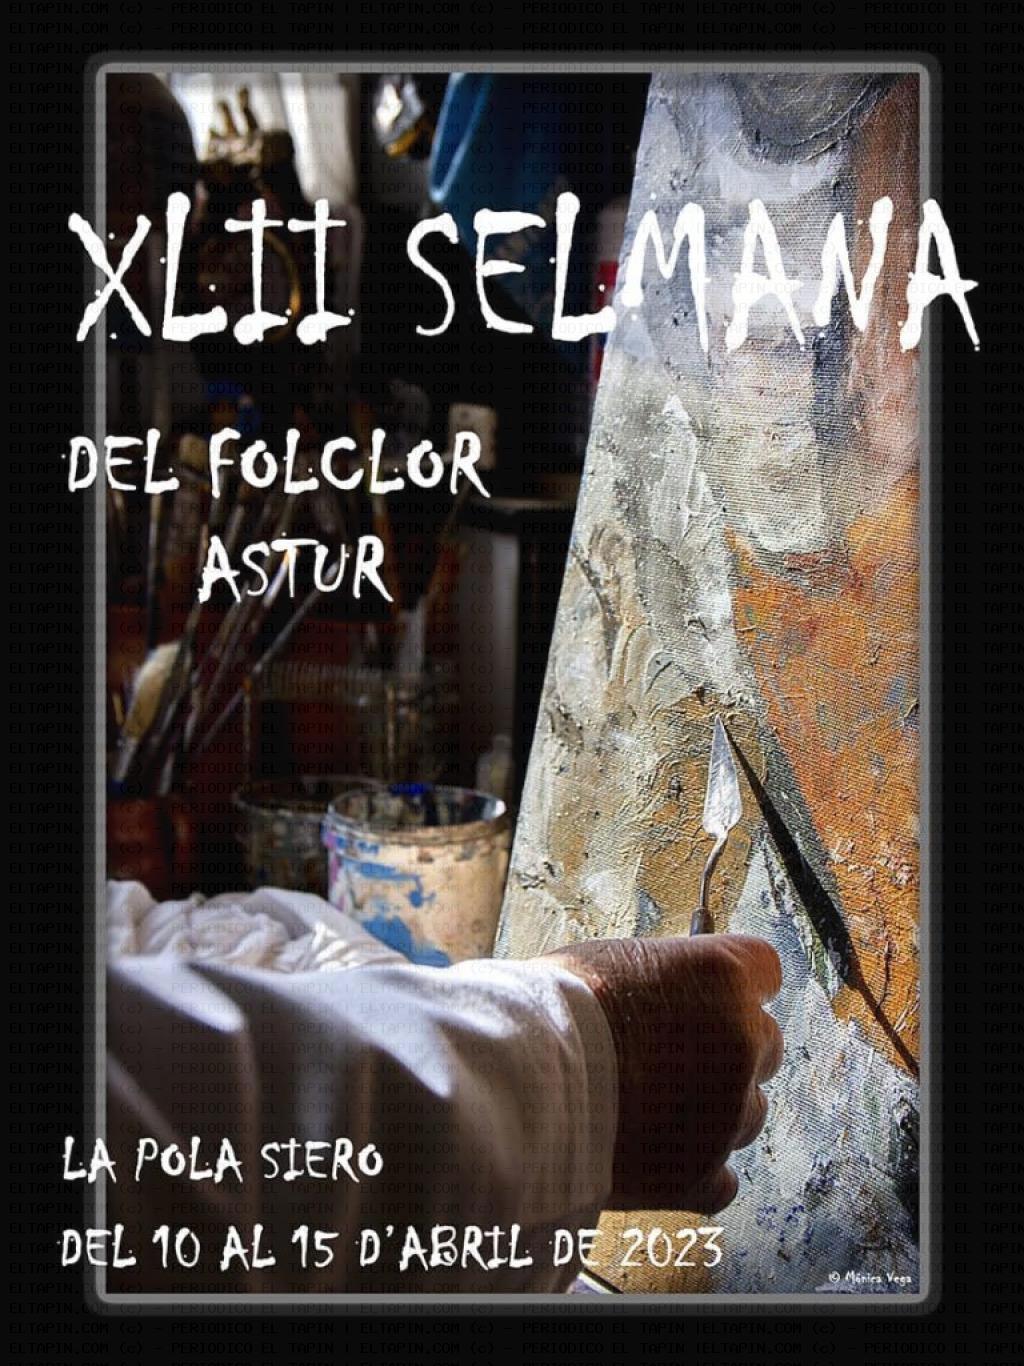 El Tapin - La XLII Selmana del Folclor Astur organizada por el grupo El Ventolín se celebrará del 10 al 15 de abril